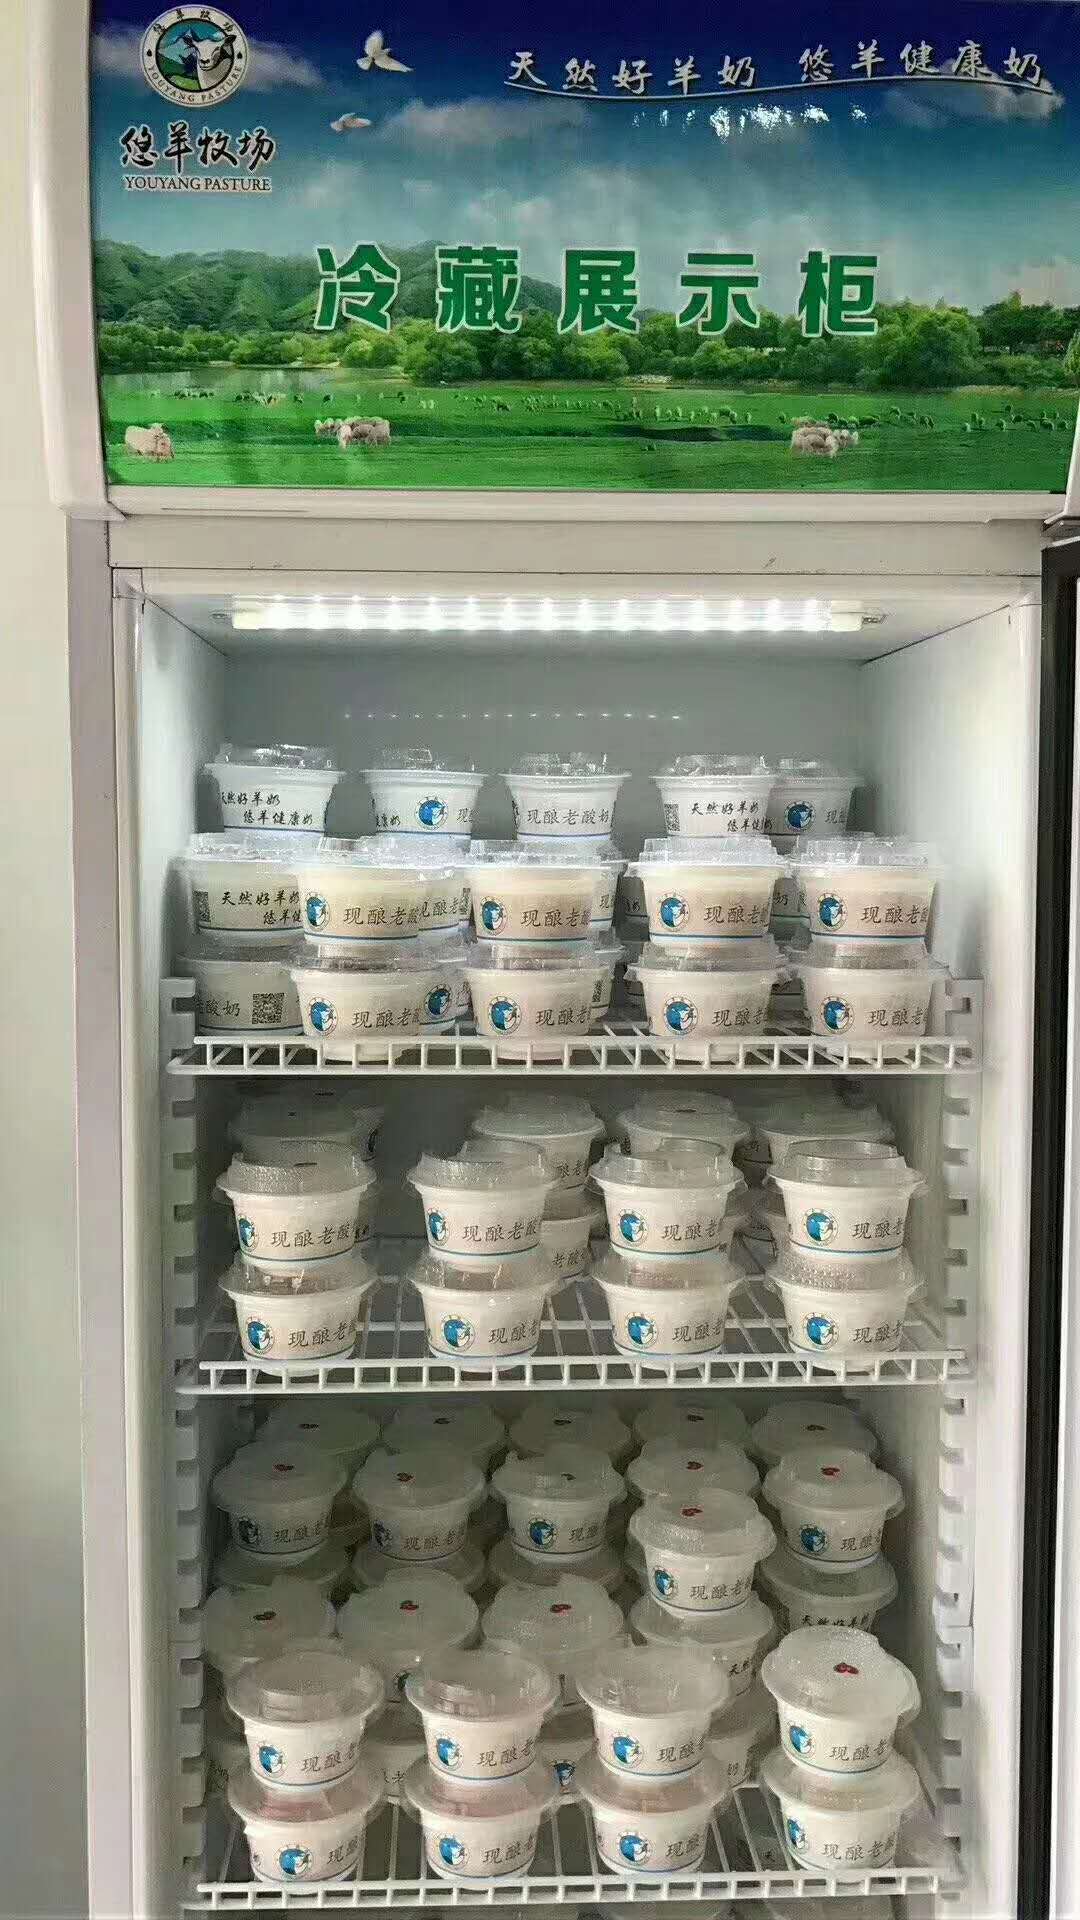 羊奶老酸奶技术教学羊奶老酸奶加盟盒装羊奶粉